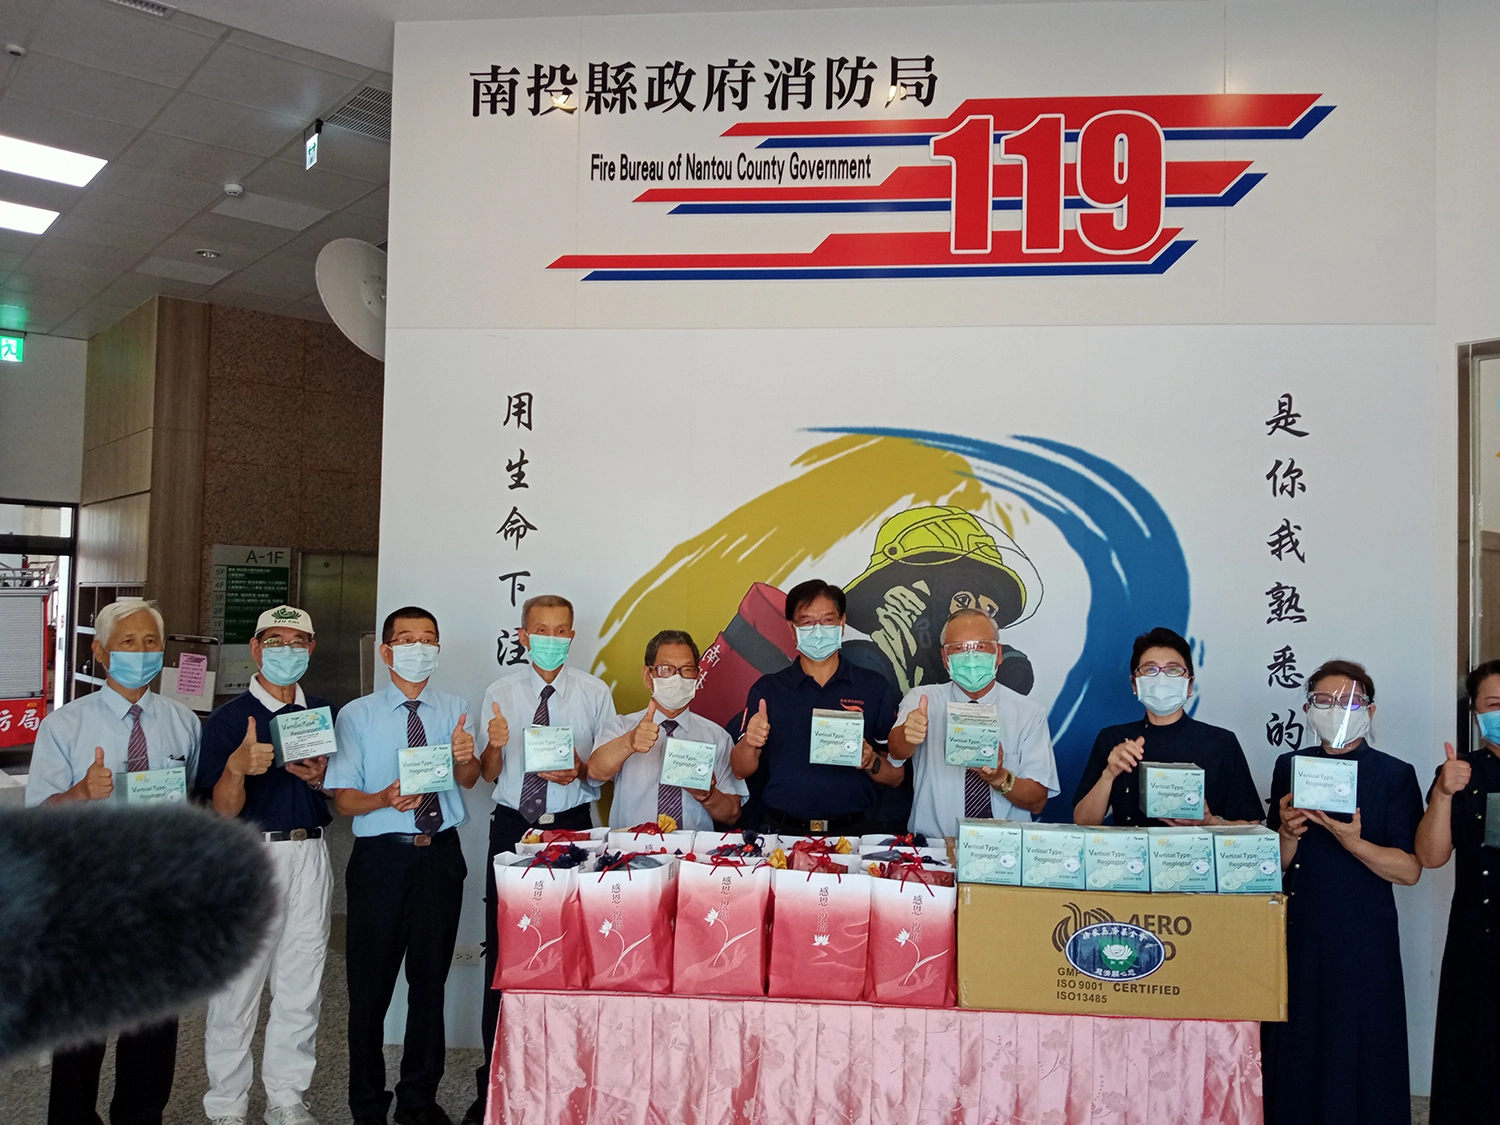 贈送N95口罩林聰吉局長(右四)代表接受。